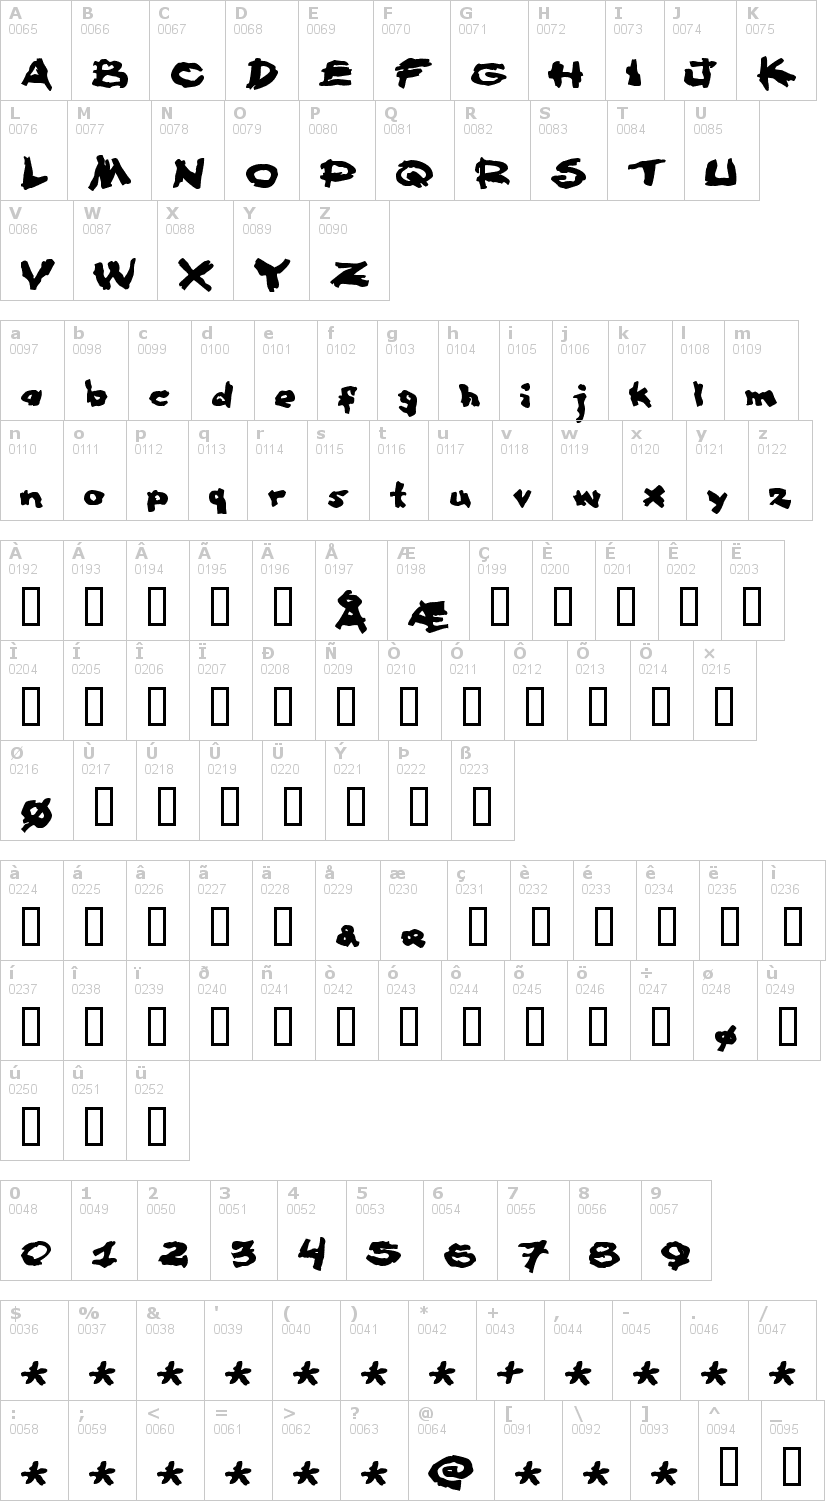 Lettere dell'alfabeto del font famous-fromage con le quali è possibile realizzare adesivi prespaziati